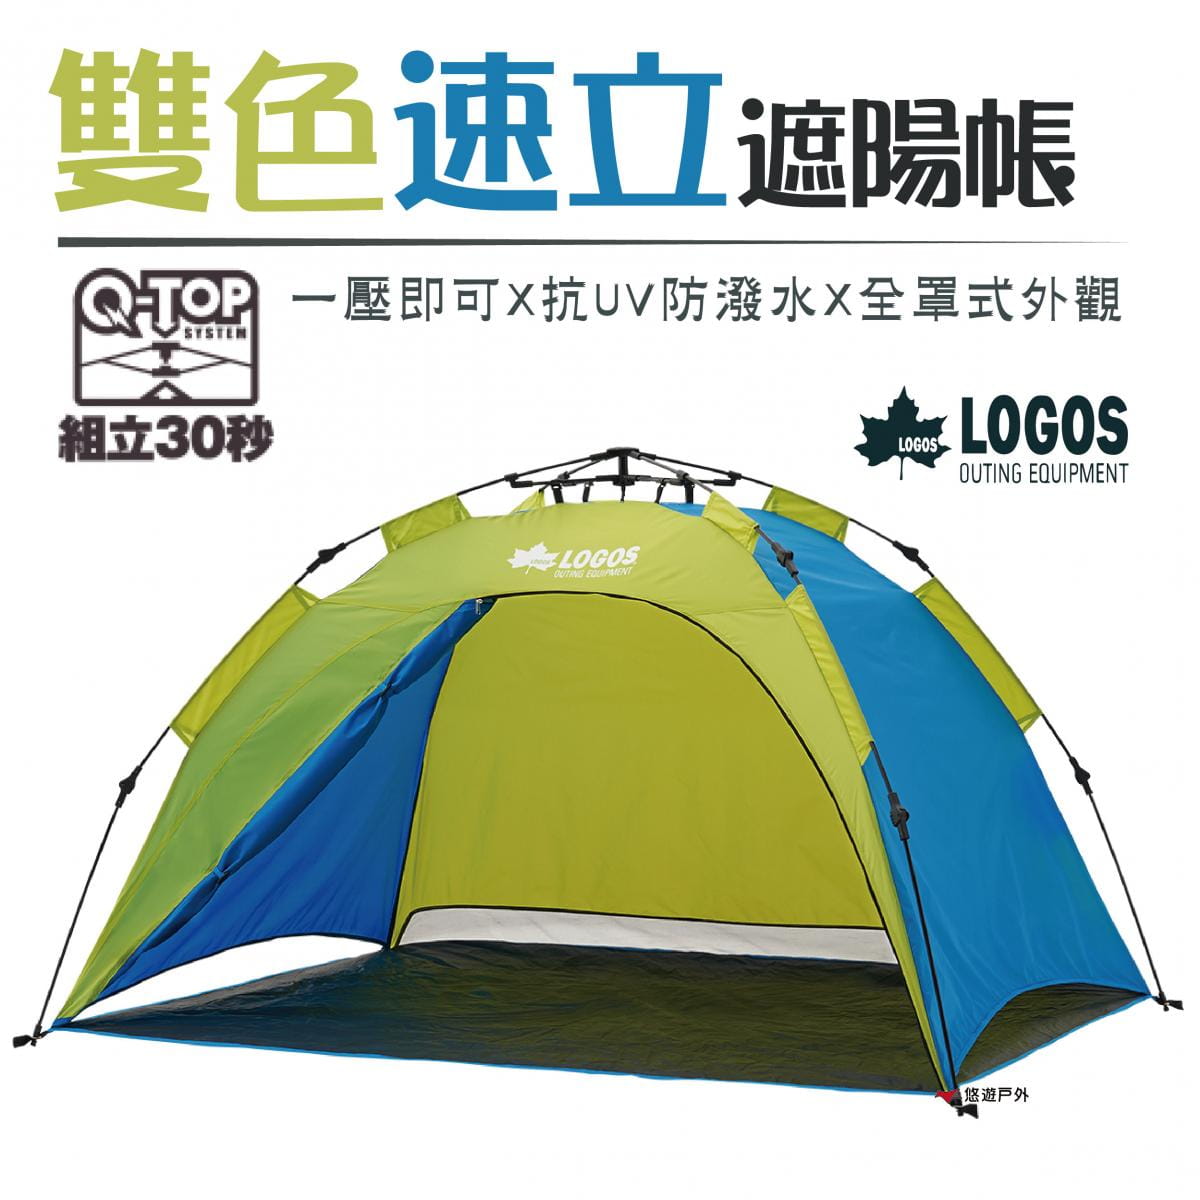 【日本LOGOS】Q-TOP 200雙色速立遮陽帳 LG71600503 0